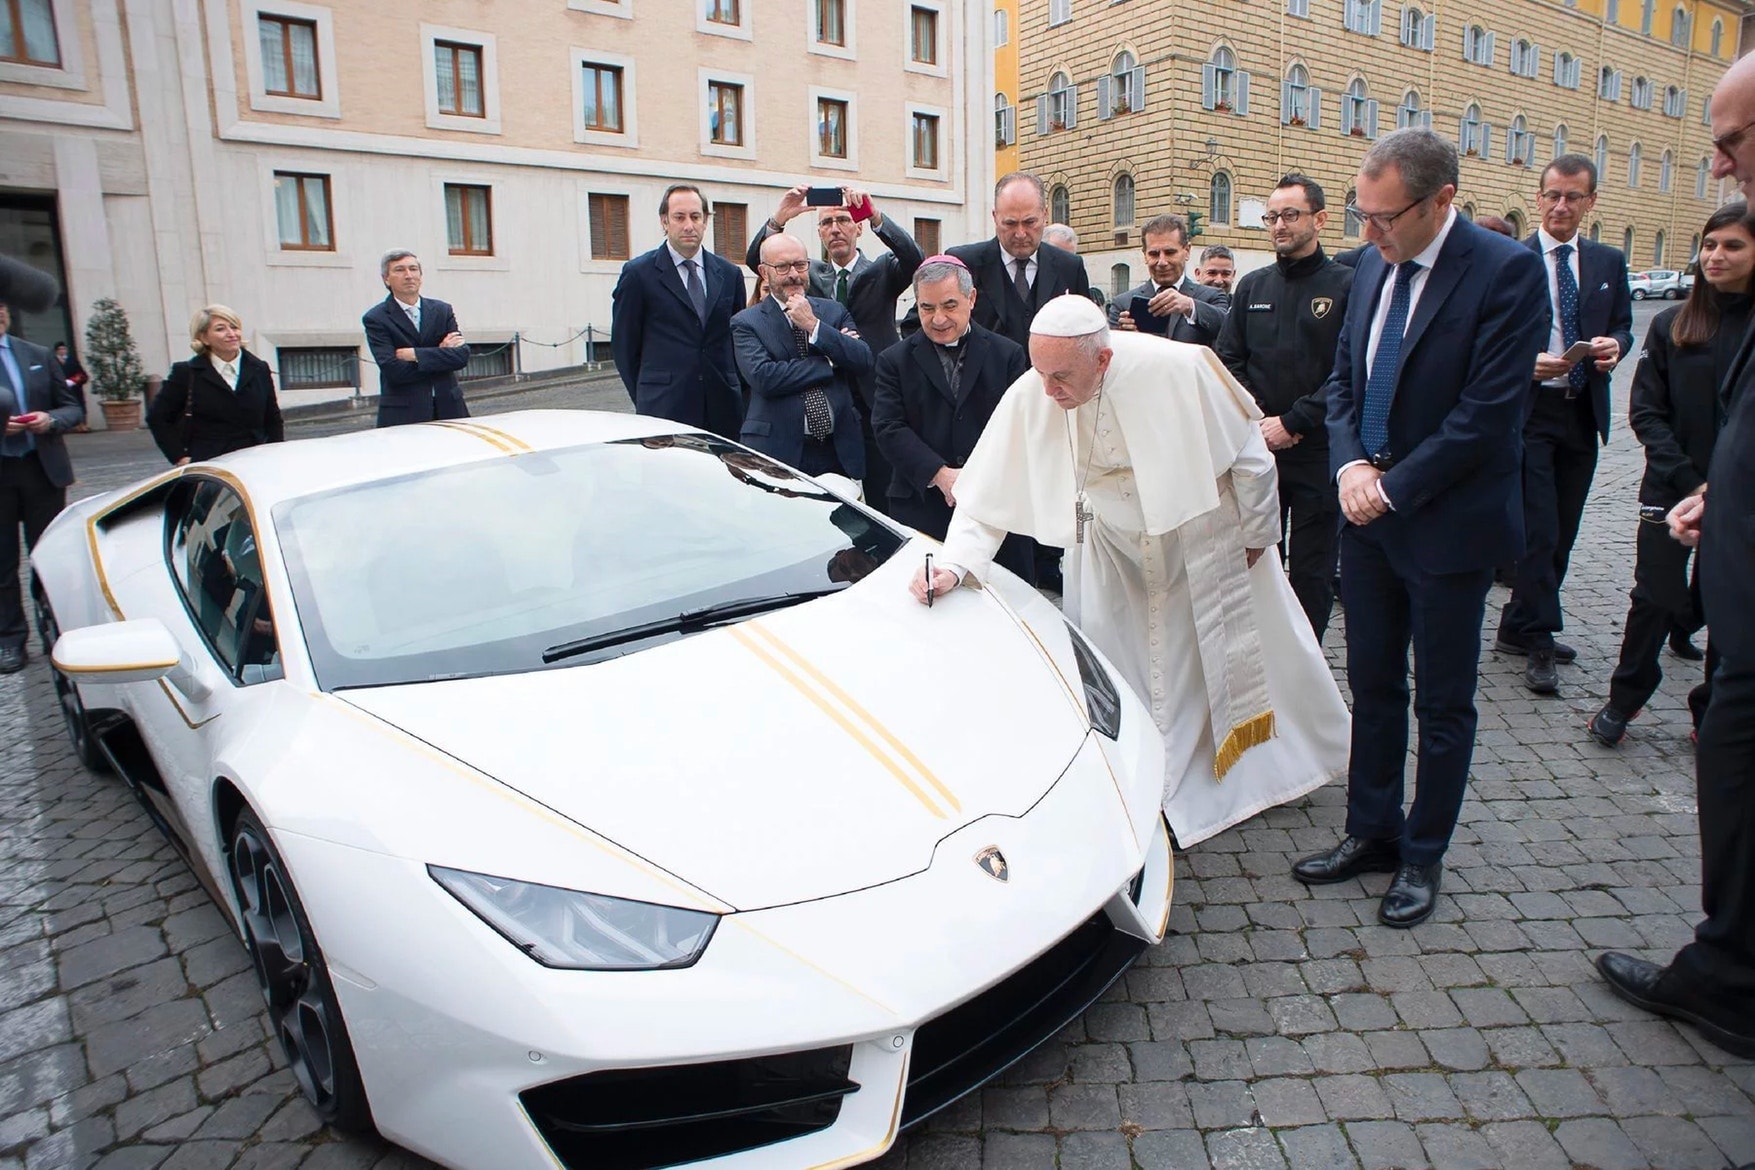 Lamborghini Hurucan Pape François